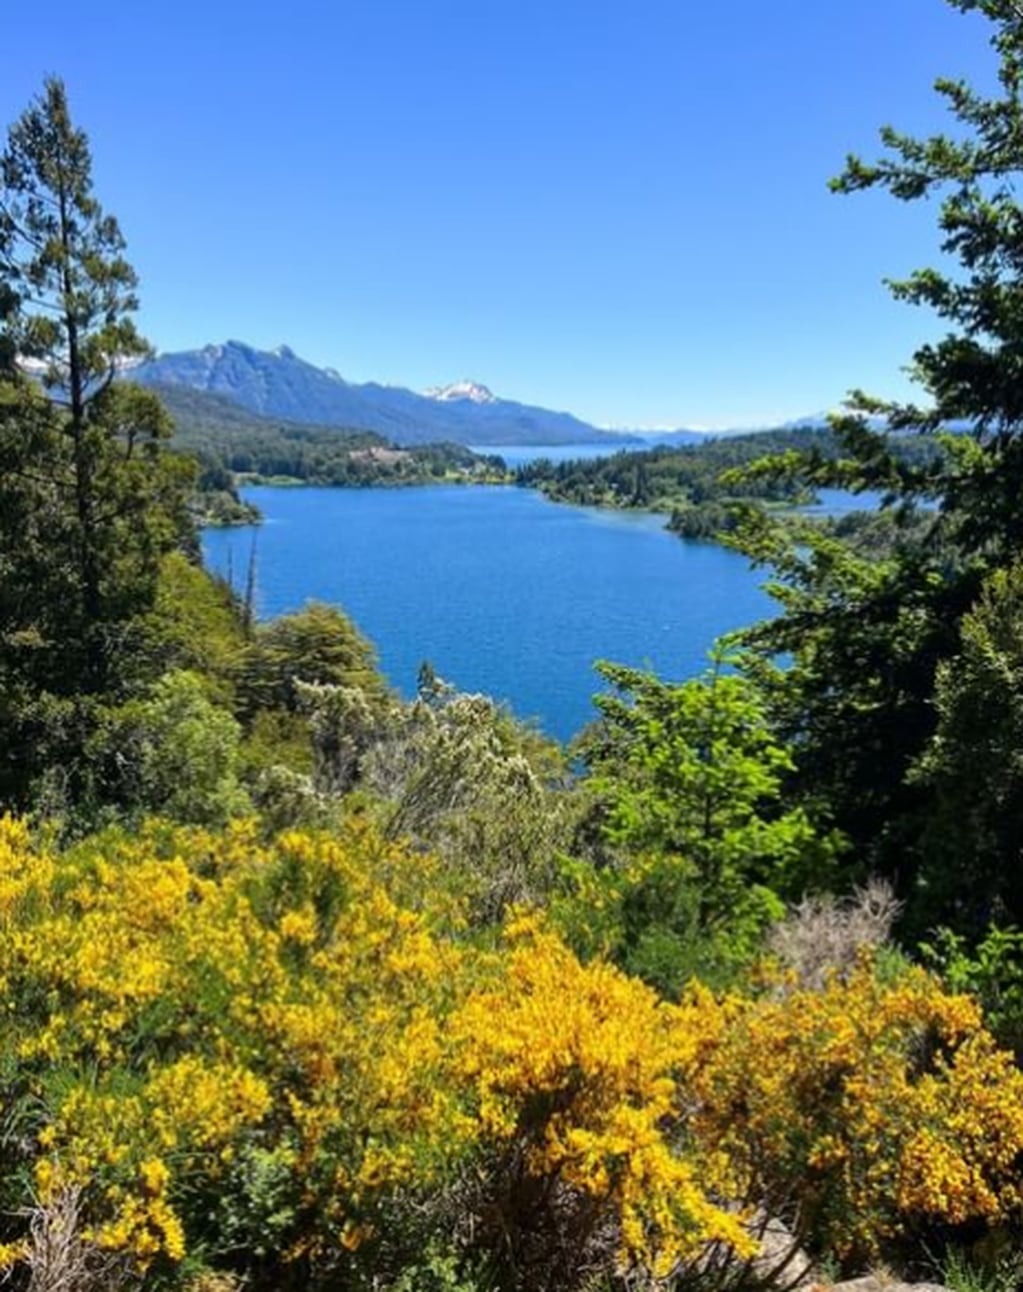 Modo vacaciones: 5 actividades imperdibles para disfrutar del verano de Bariloche en 3 días. Foto: Instagram @barilochear